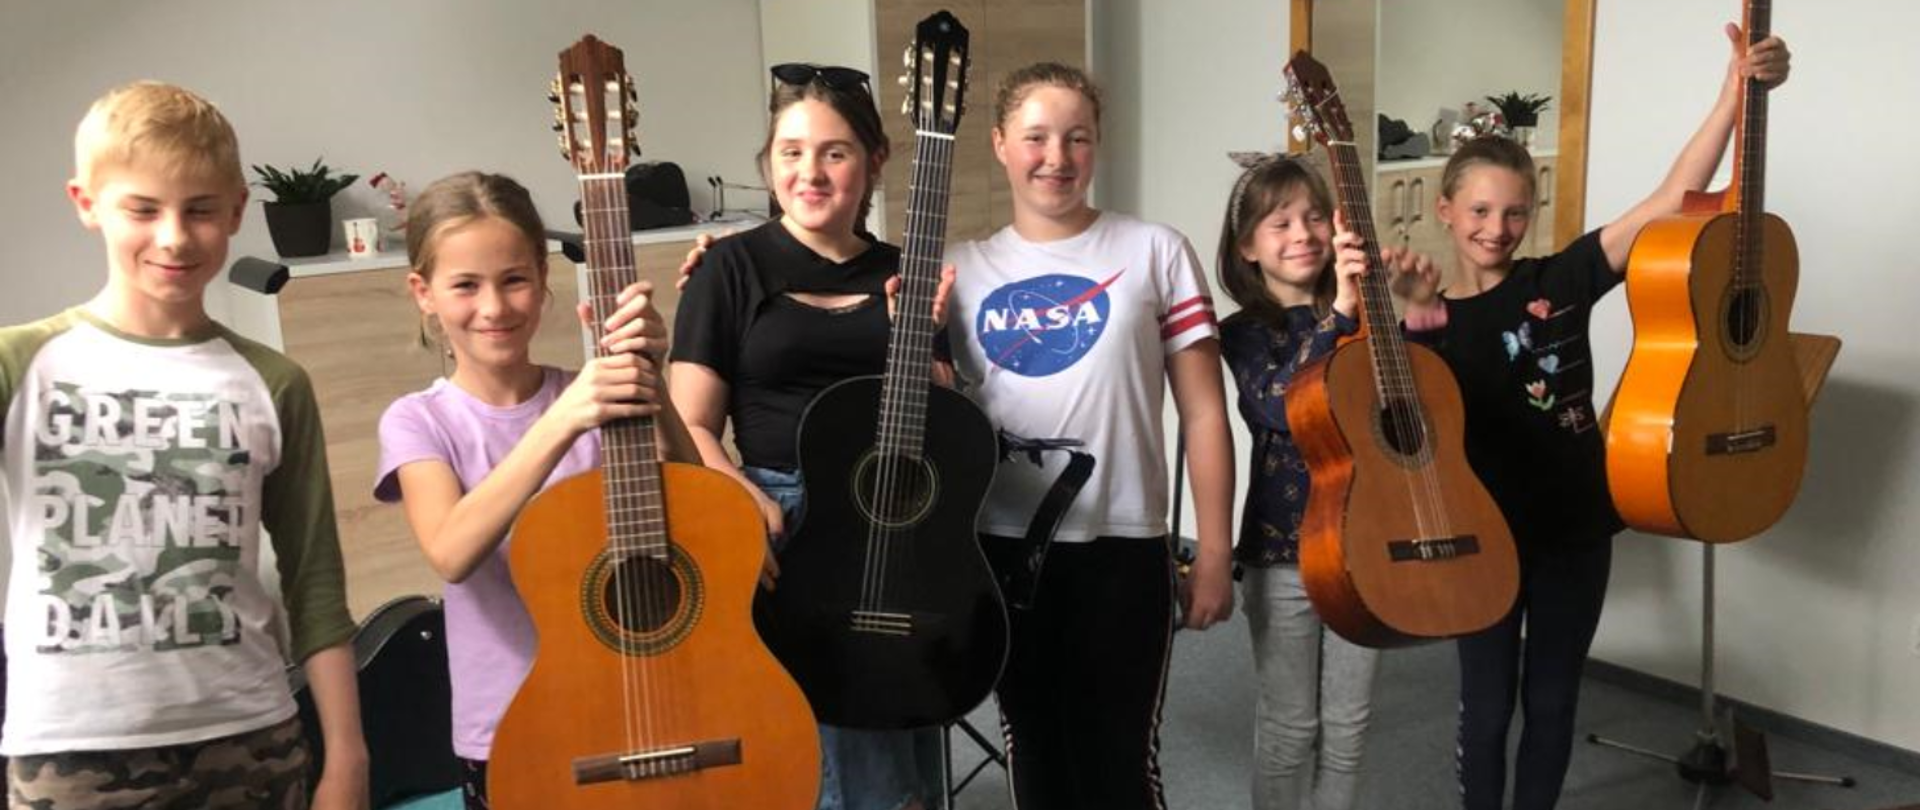 Na zdjęcie sześcioro uczniów (pięć dziewczyn i jeden chłopak), Wszyscy są uśmiechnięci i trzymają gitarę. W tle za nimi komoda i szafa w kolorystyce: front w kolorze brązu, korpusy białe, po boku wisi lustro.